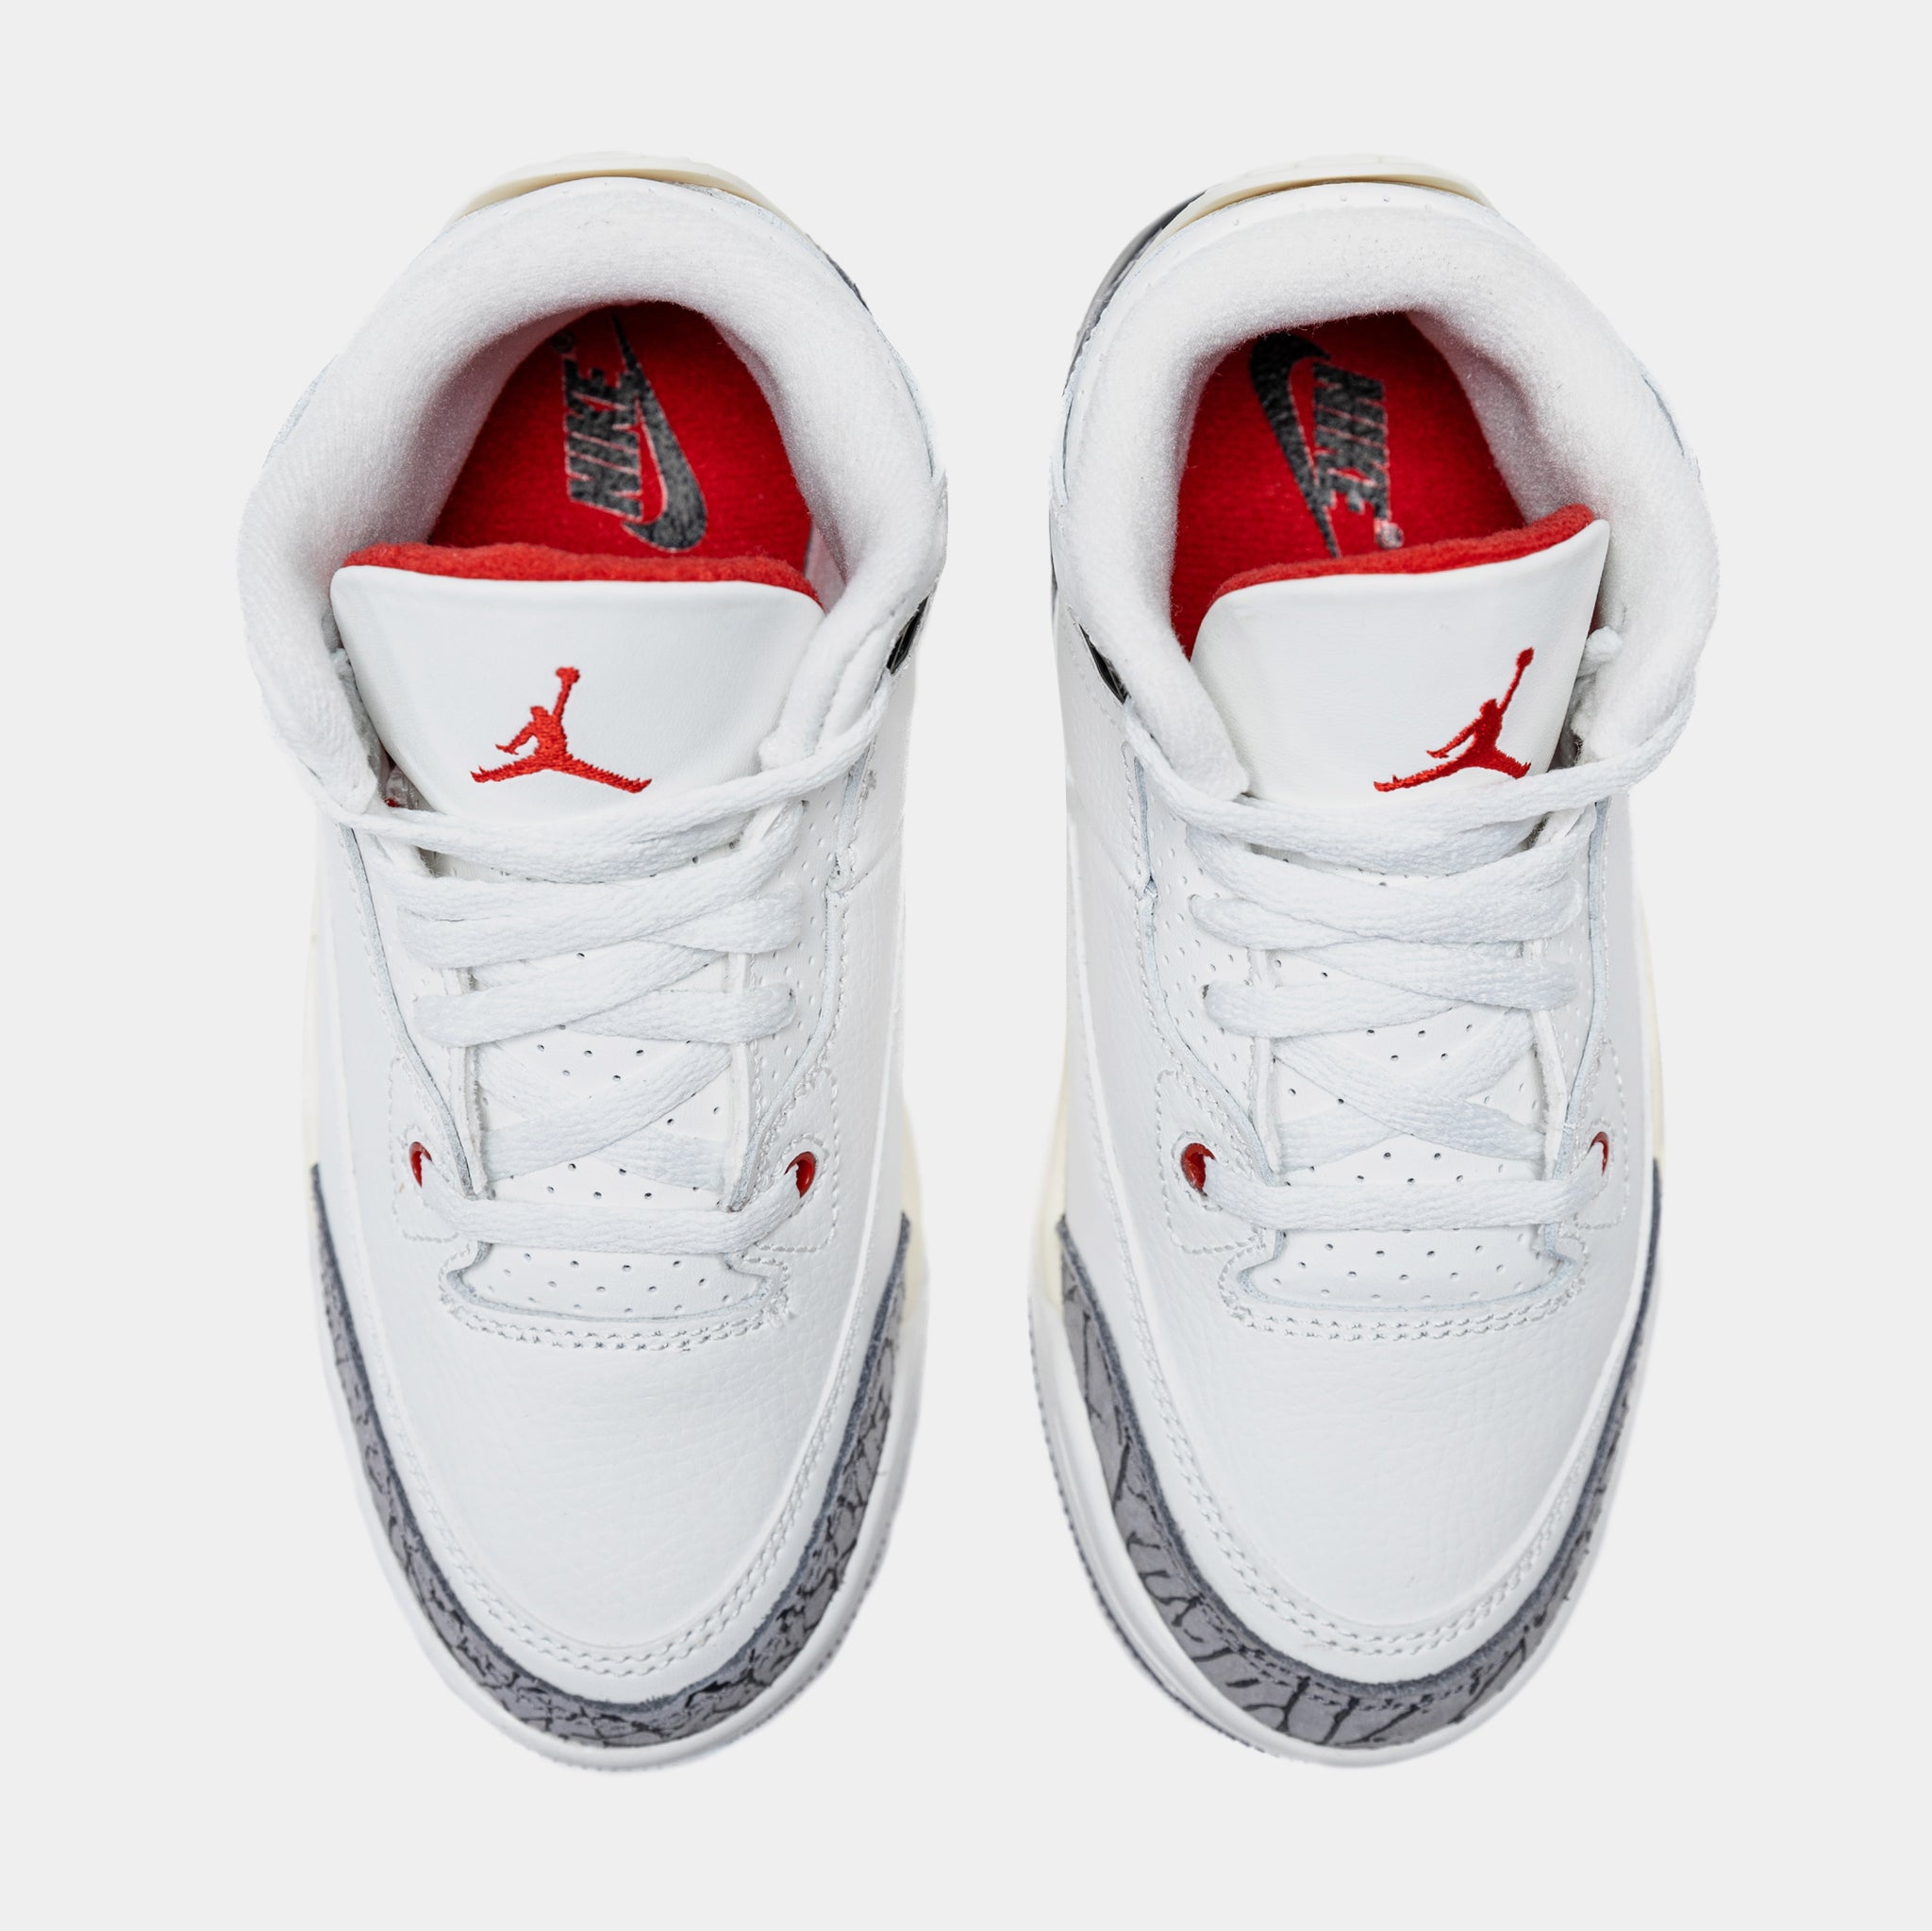 Where to Buy the Air Jordan 3 “Palomino”